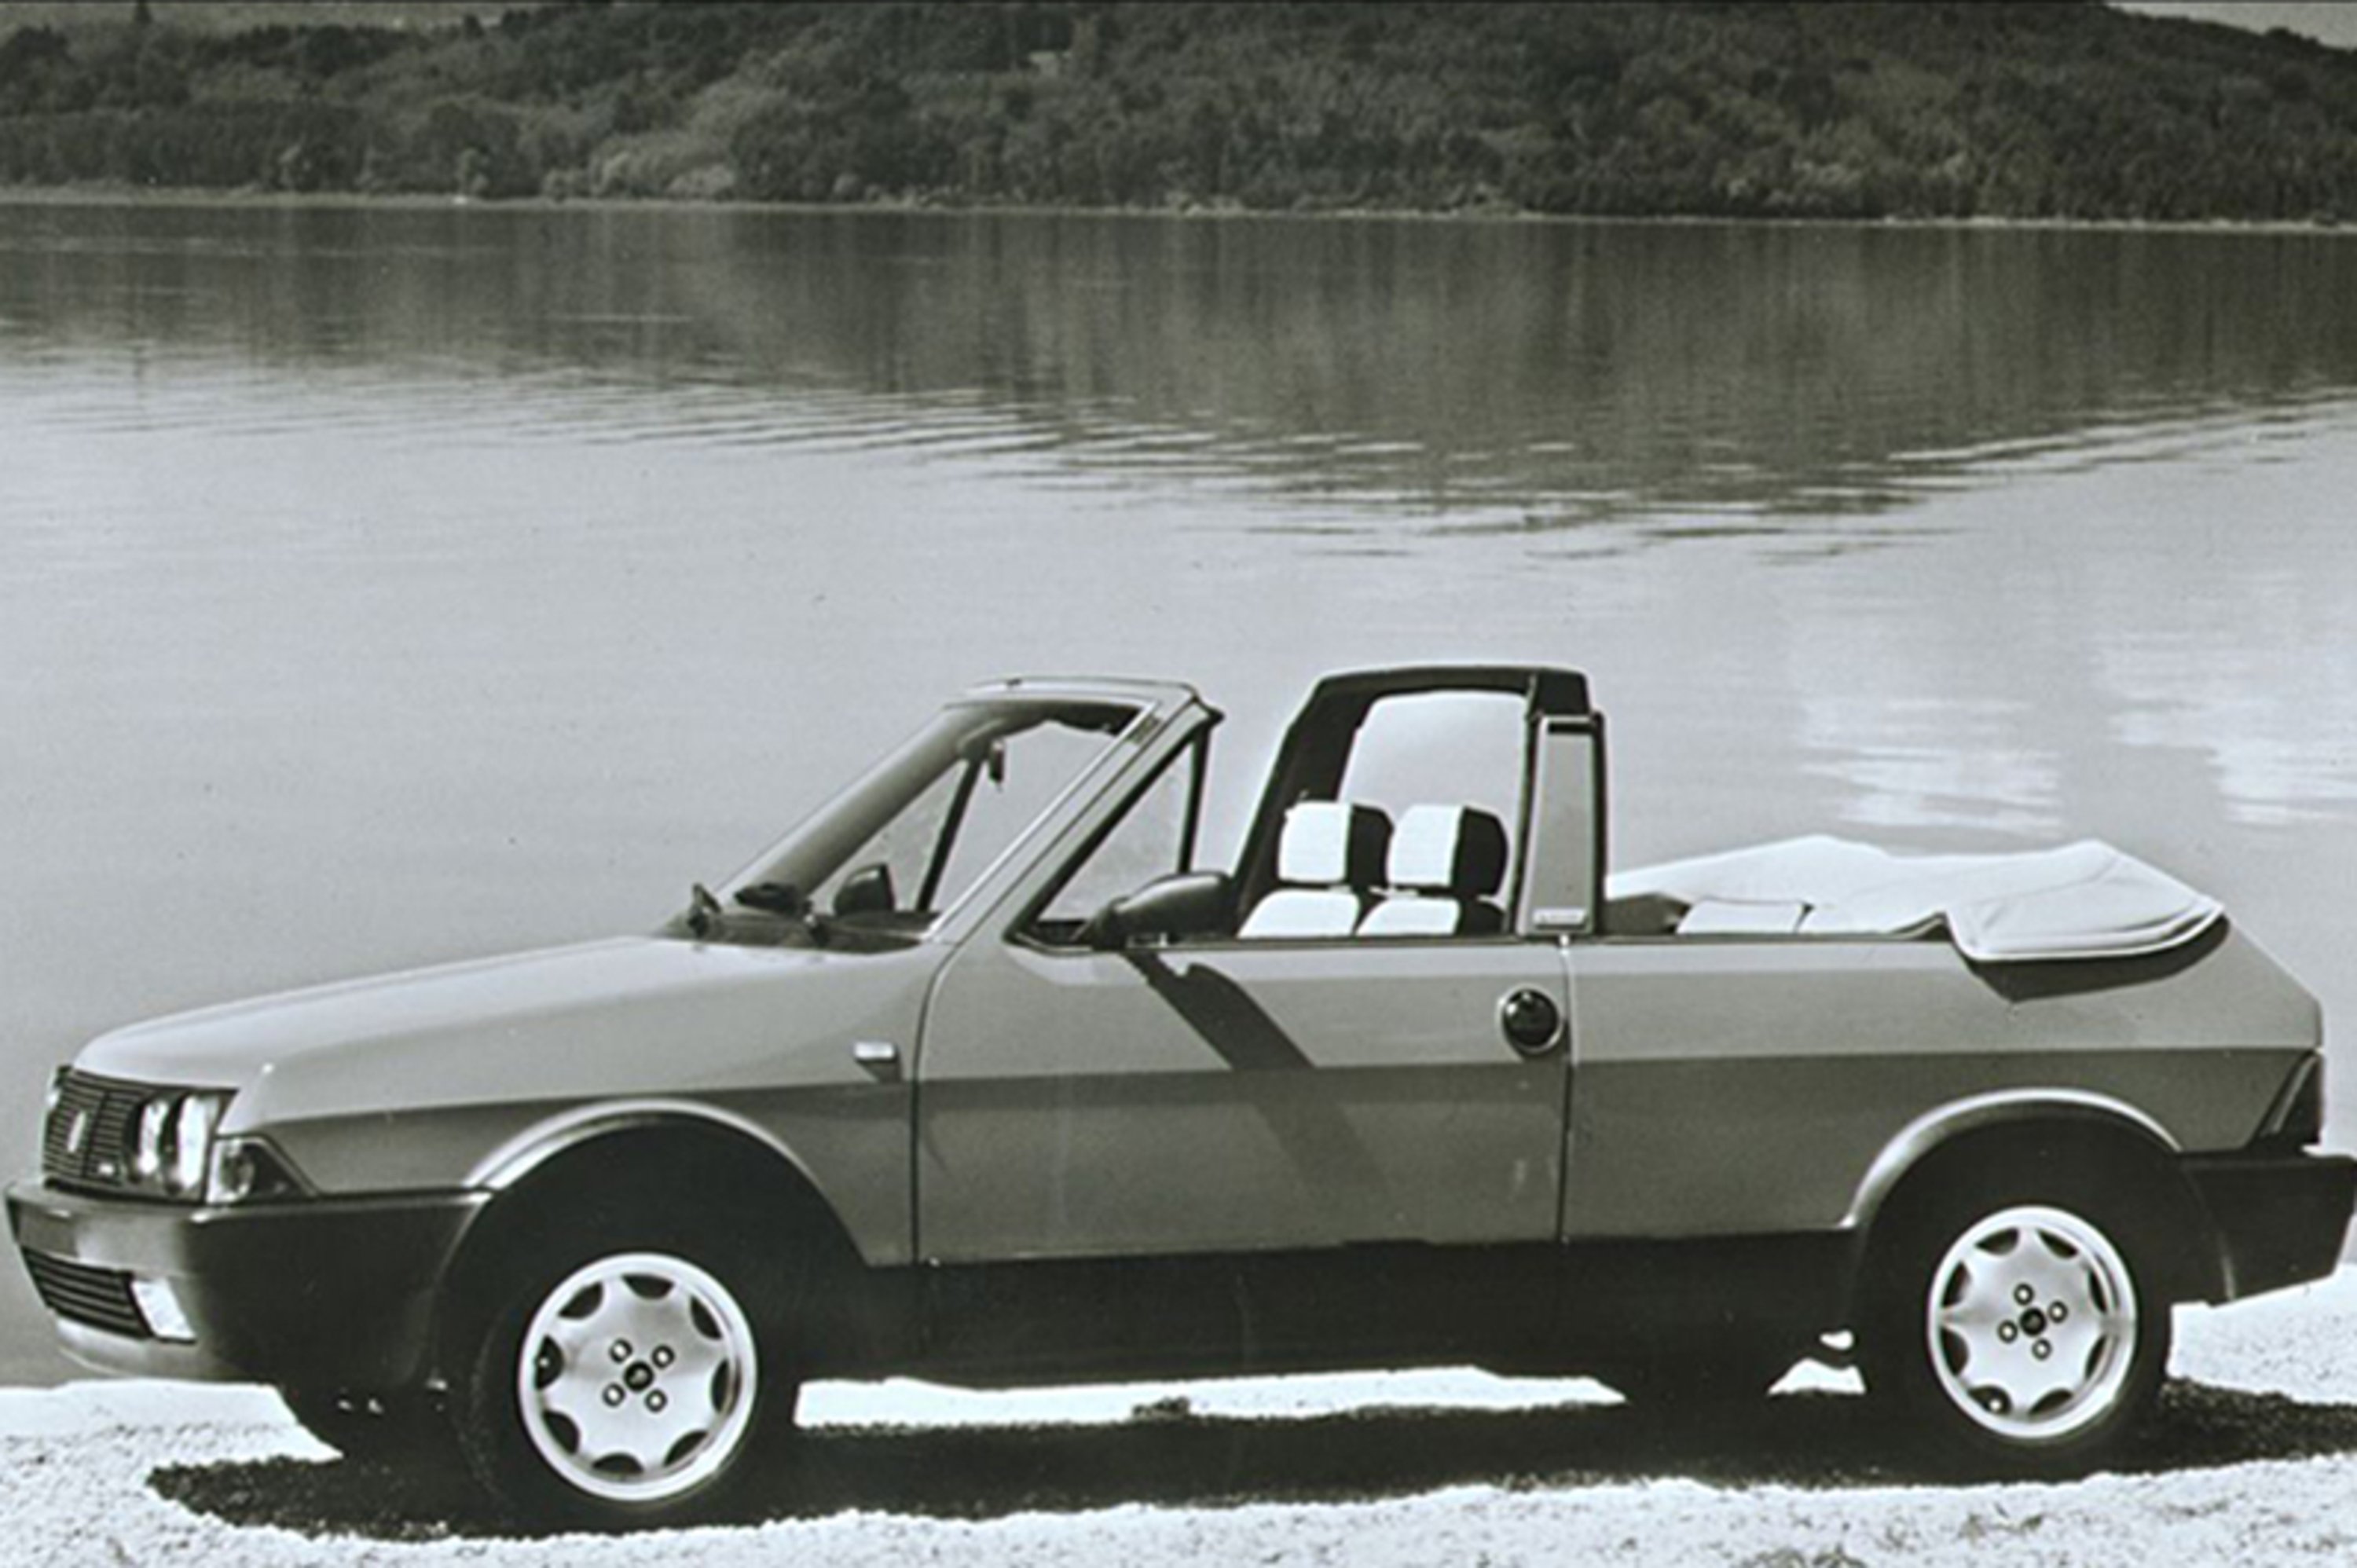 Fiat Ritmo Cabrio (1981-82)